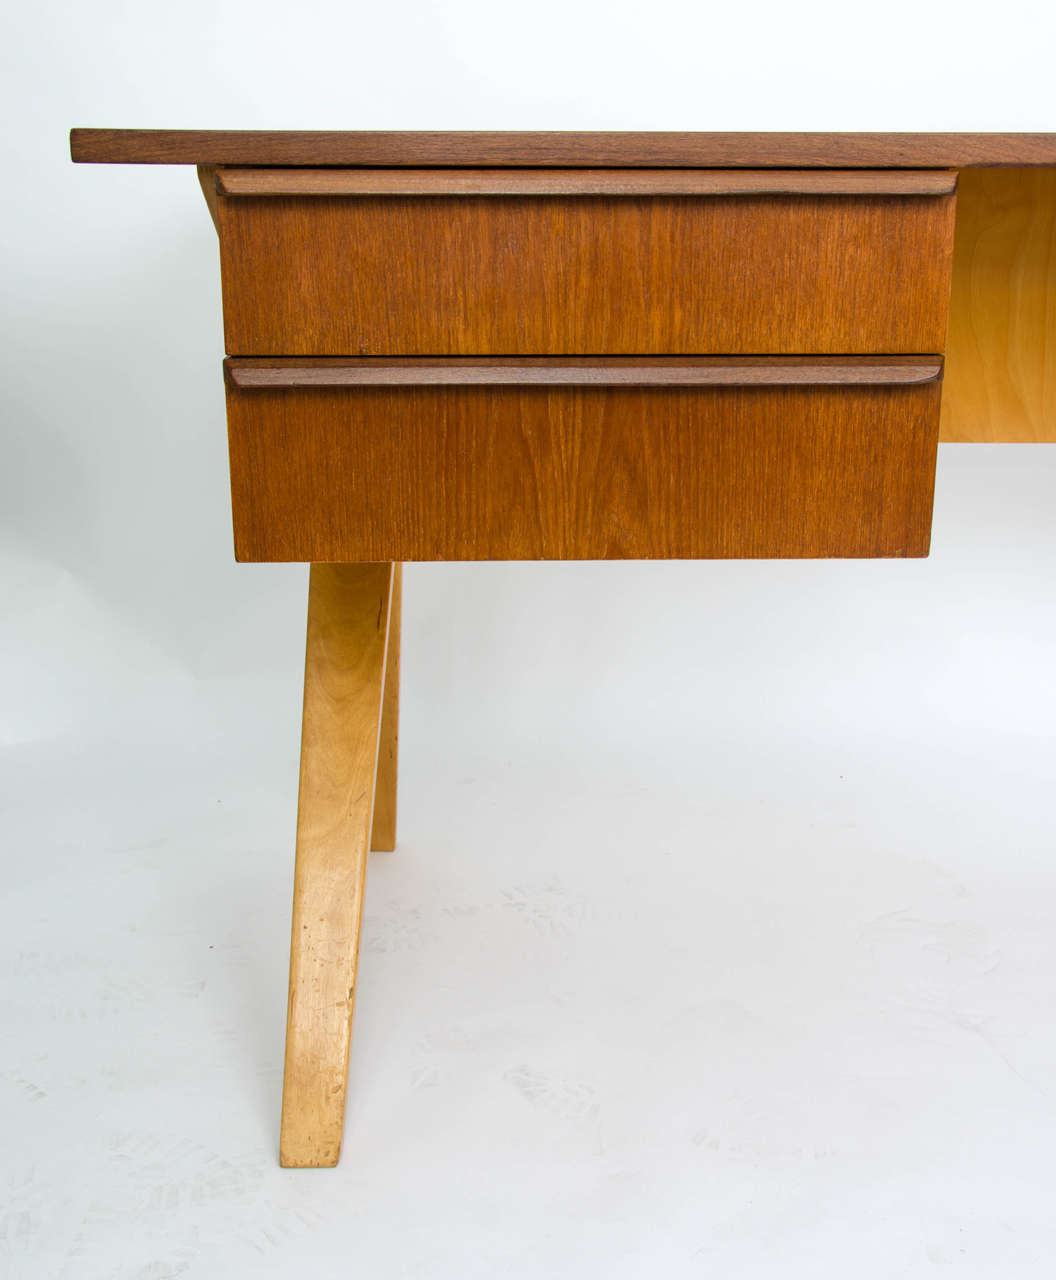 Bentwood Bent Ply Desk by Cees Braakman, Netherlands 1950s